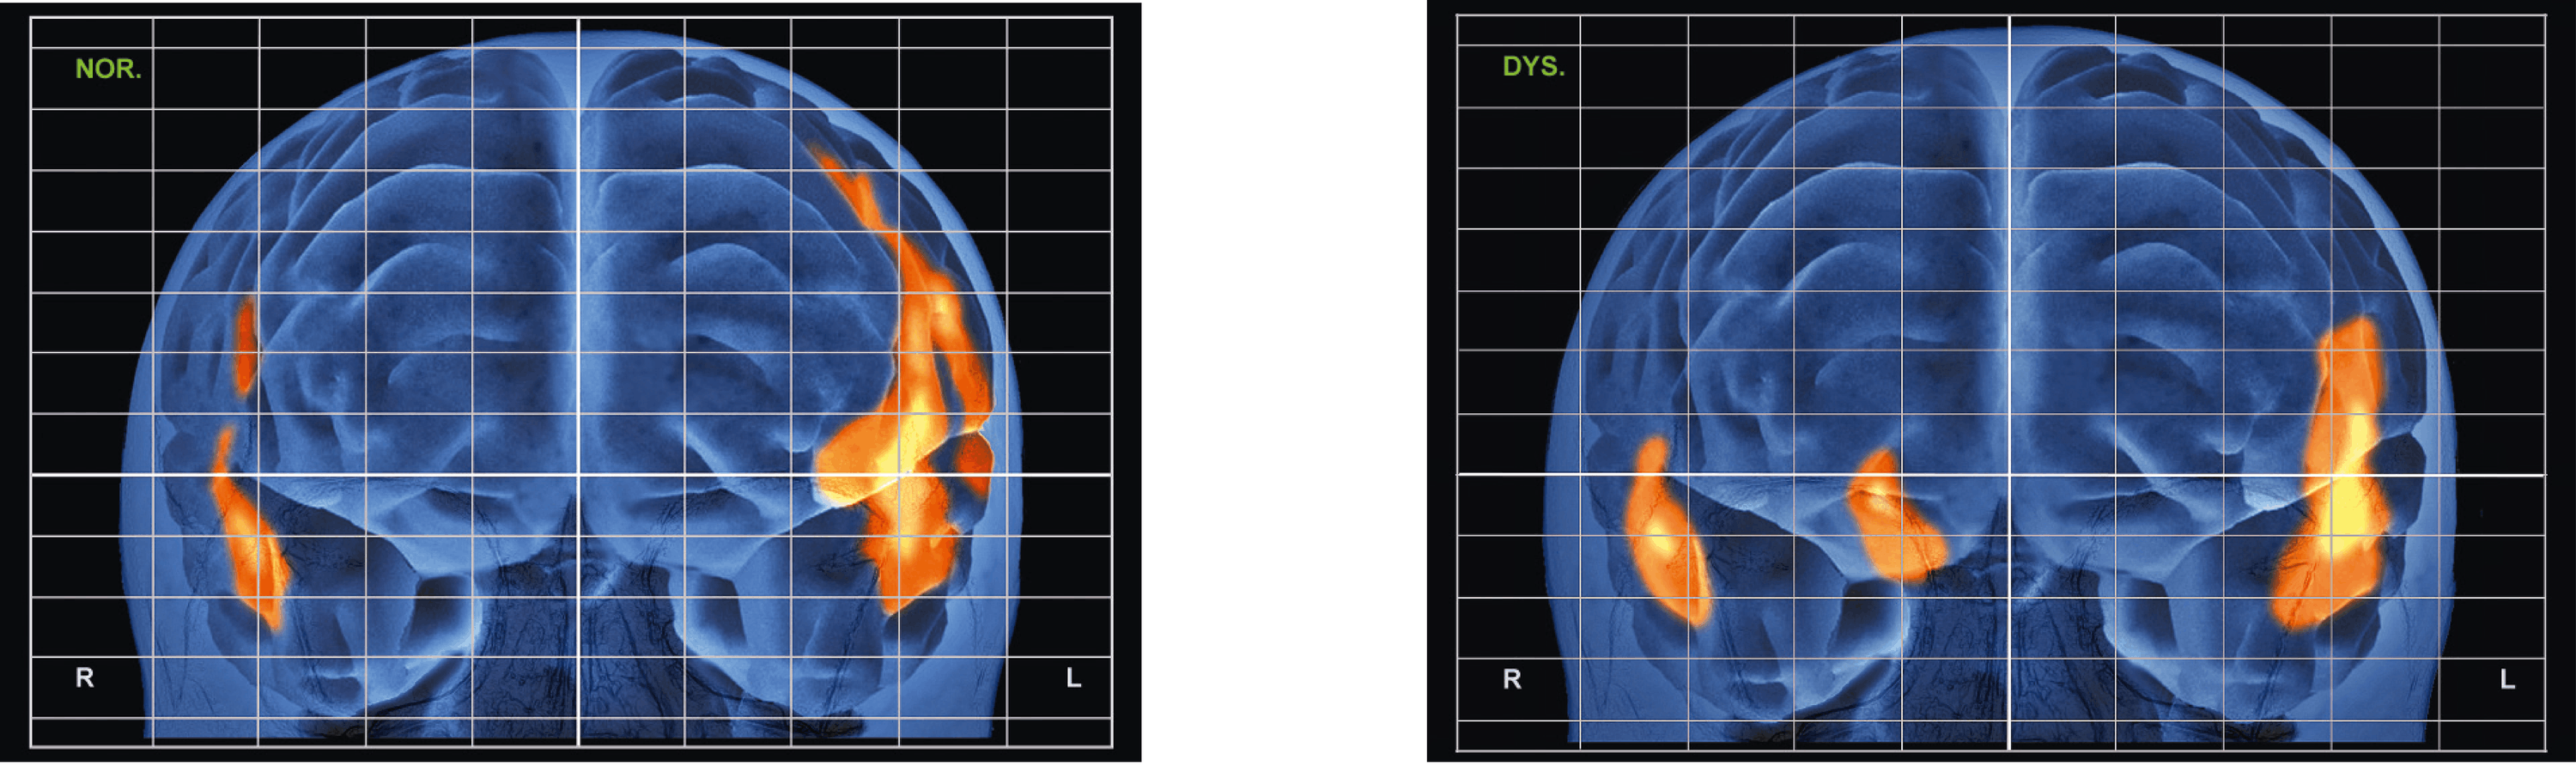 <stamp theme='svt-green1'>Doc. 4</stamp> Les activations cérébrales d’un patient témoin (gauche) ou dyslexique (droite) en train de lire. Il s’agit d’une reconstruction 3D du cerveau.